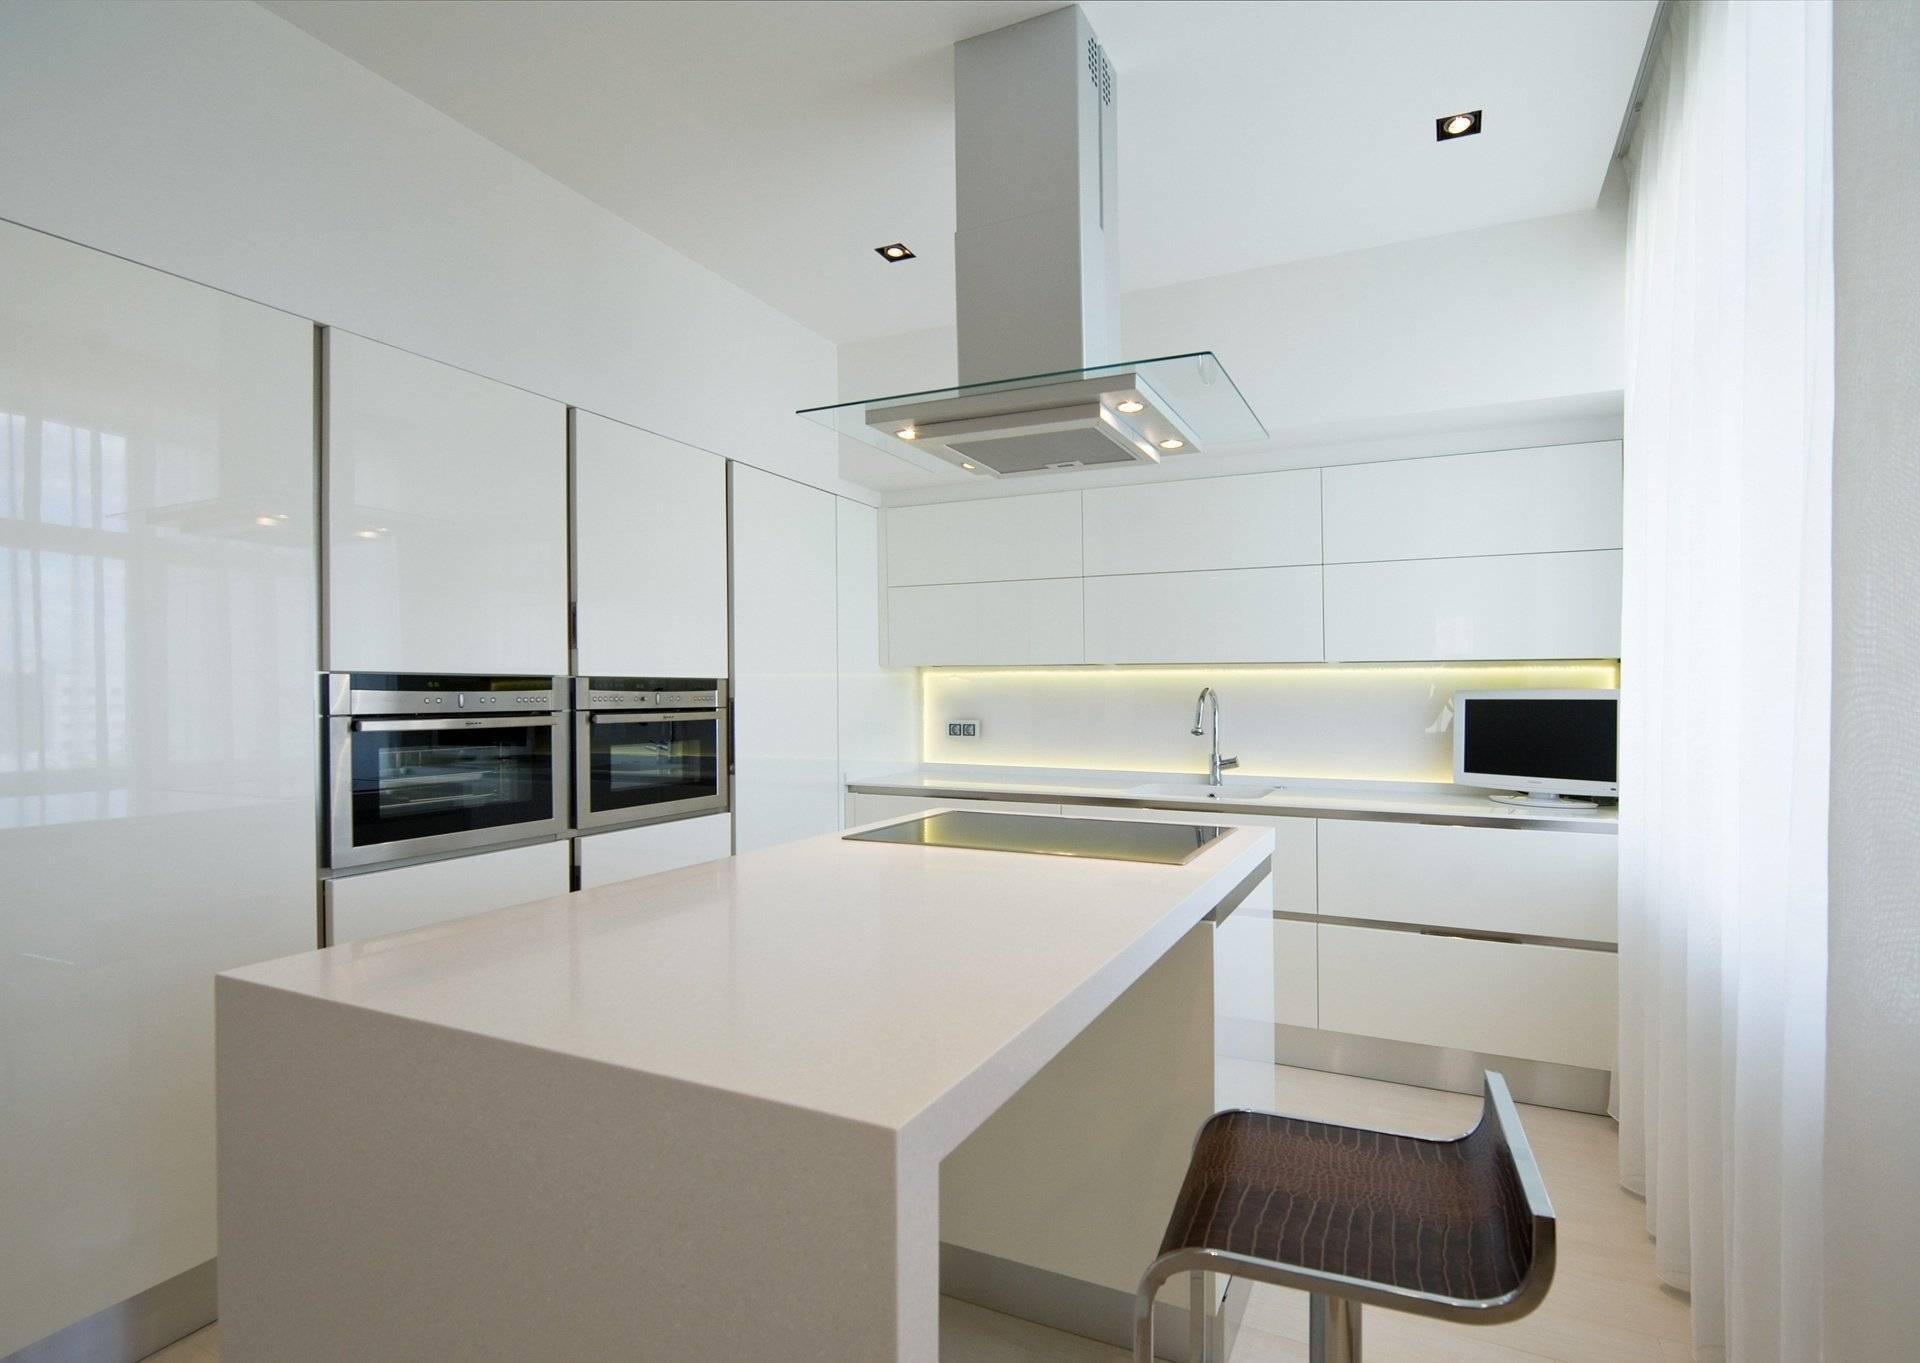 Кухня в стиле минимализм 2021: свежие идеи для дизайна на 60 фото